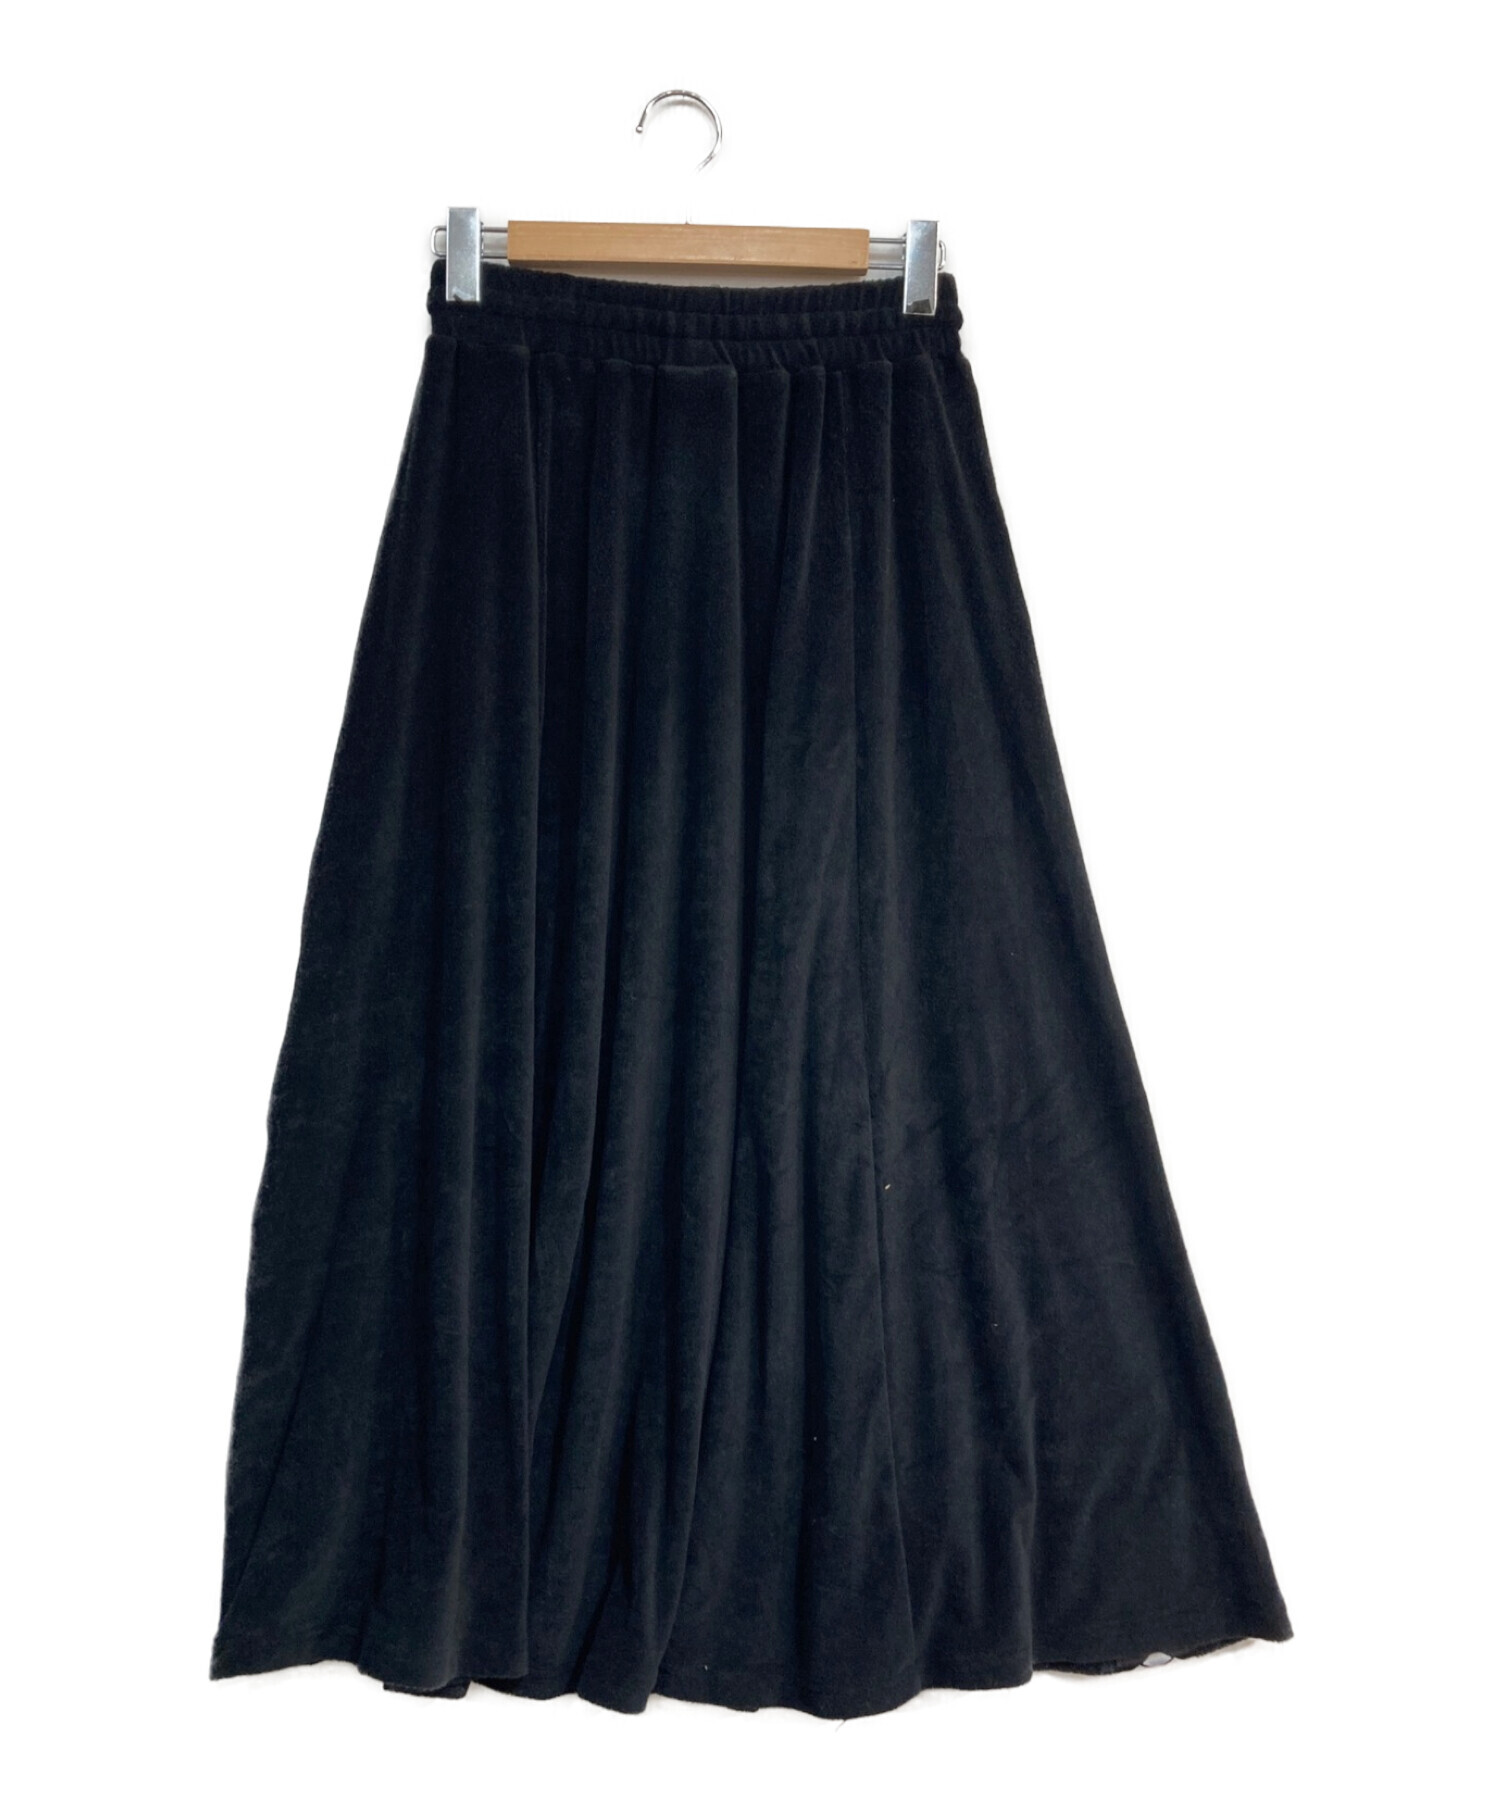 アニエスベー 黒ミニスカート - スカート